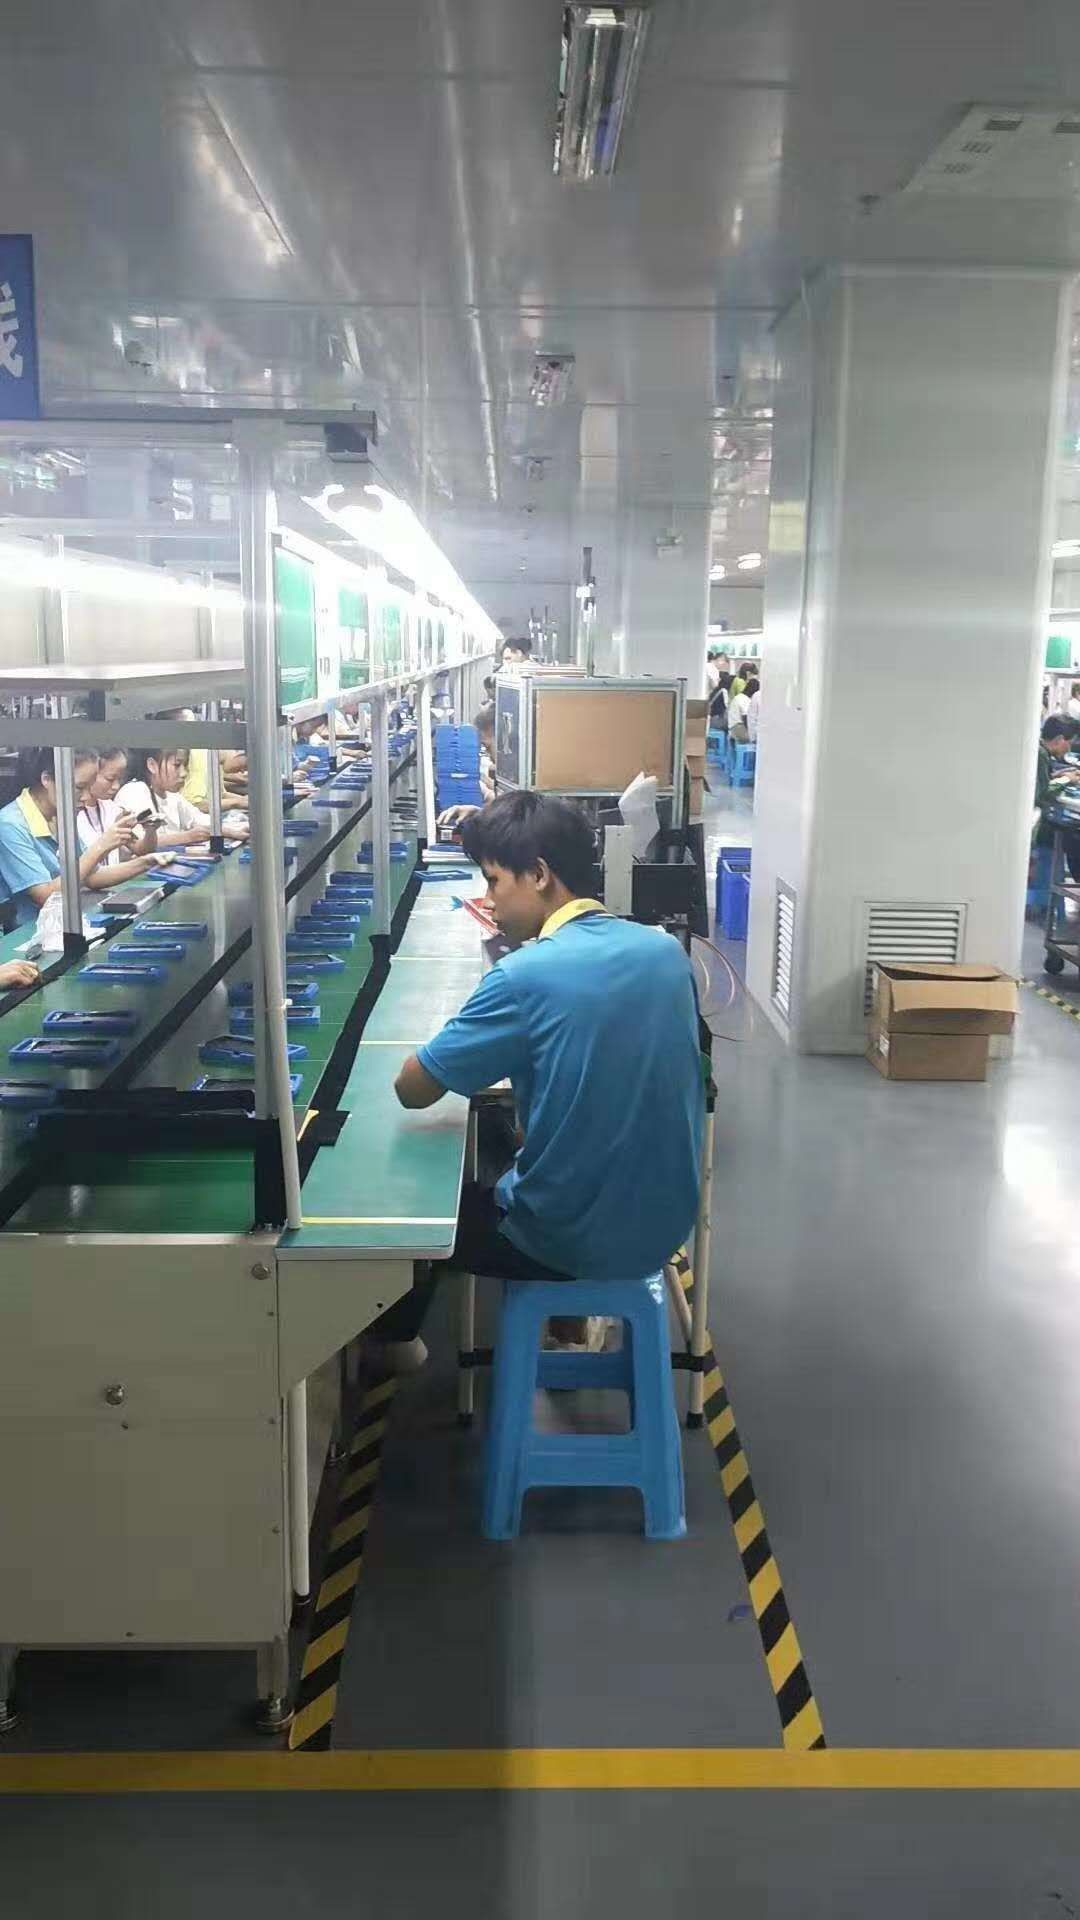 惠州大型电子厂 要做手机配件,大量招聘小时工,两班倒坐班,普通工衣